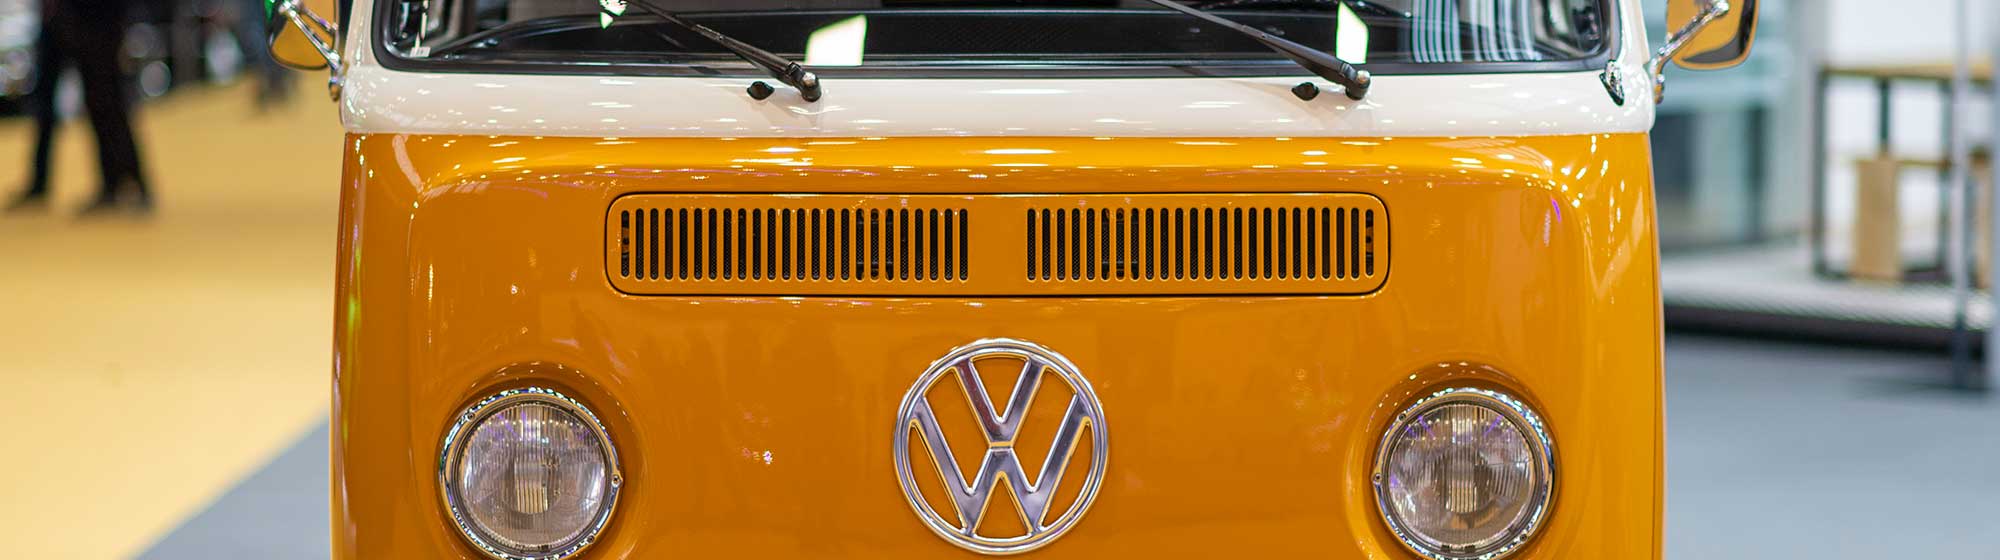 Véhihcule de type volkswagen combi jaune expose lors de Rétromobile